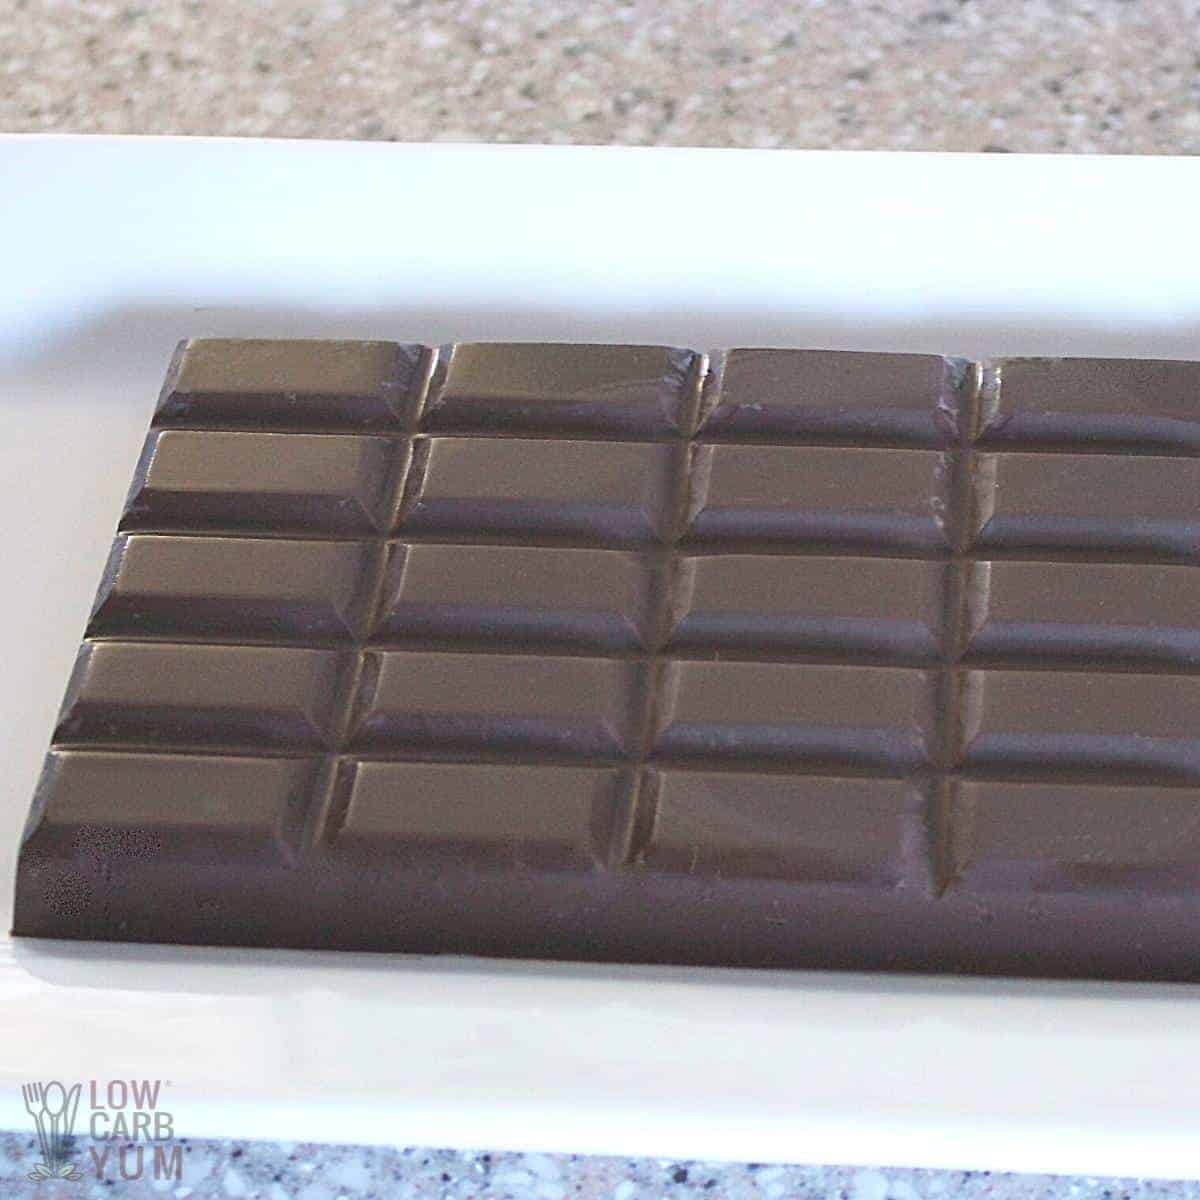 Comment fabrique-t-on le chocolat? - 5 ingredients 15 minutes